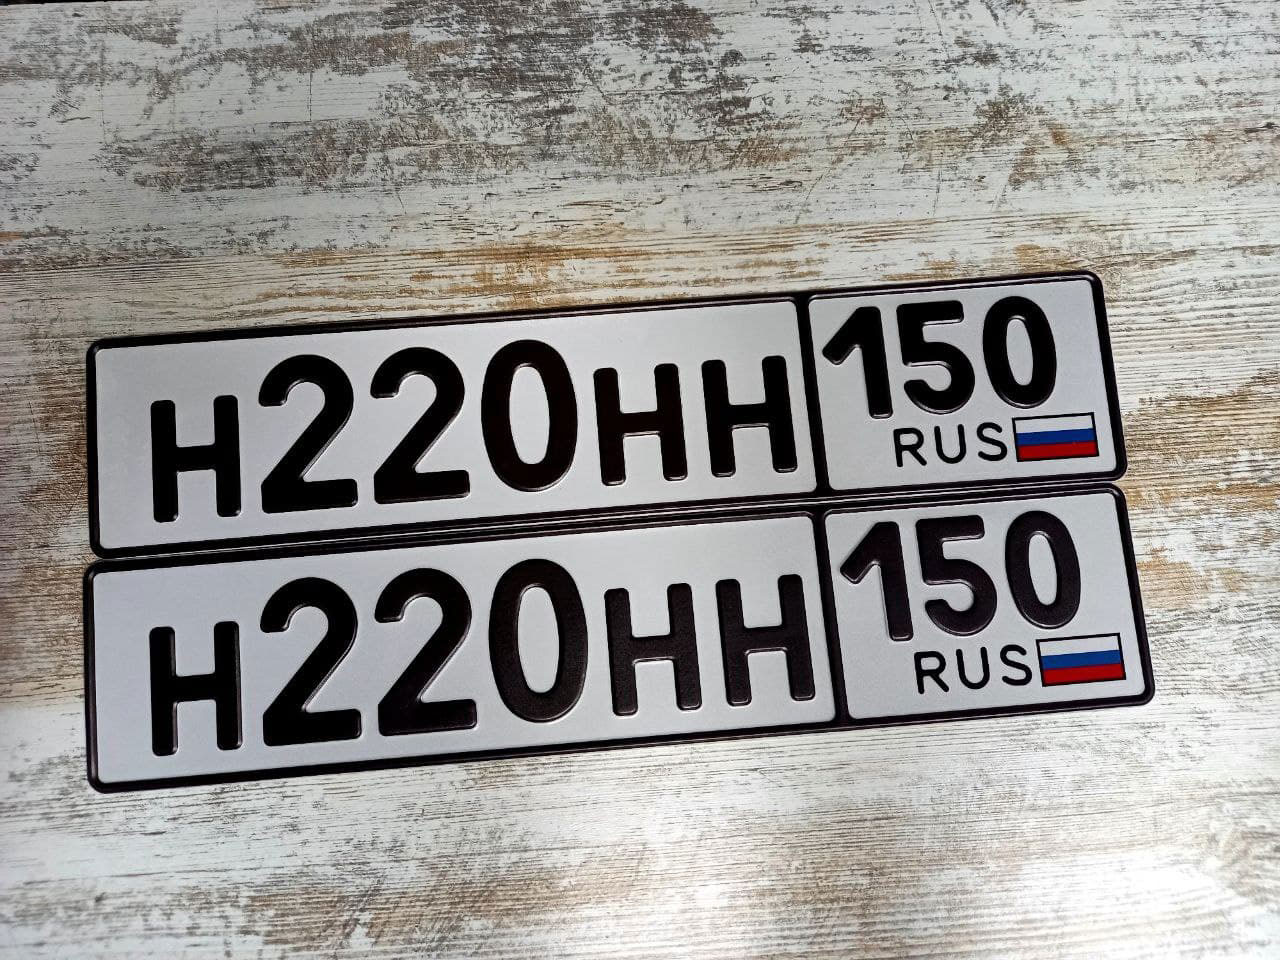 Дубликаты гос номеров жирным шрифтом на автомобиль с флагом РФ